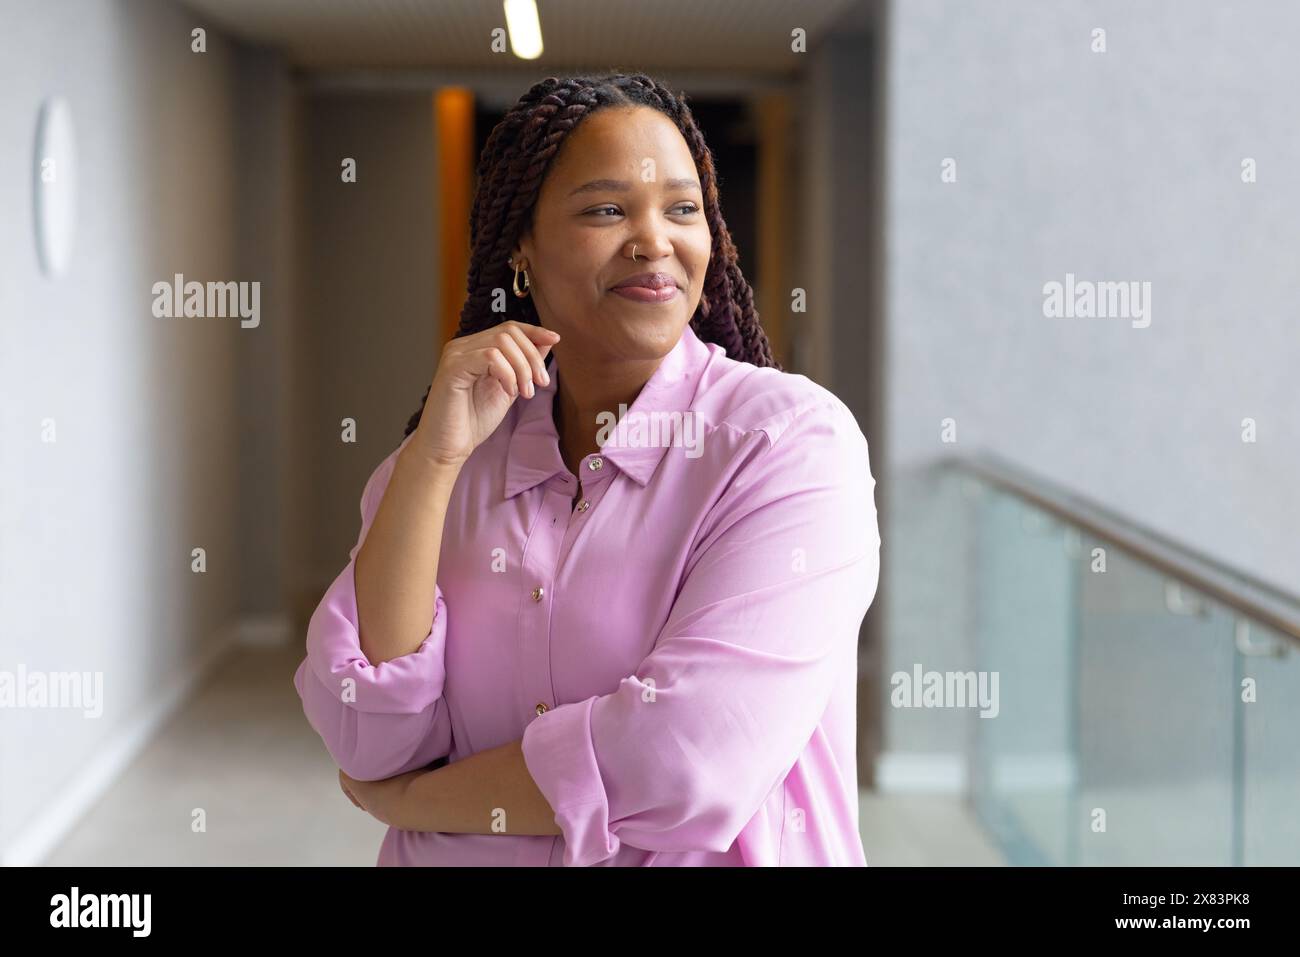 Dans un bureau moderne pour les affaires, une femme biraciale dans une chemise rose clair sourit dans le couloir Banque D'Images